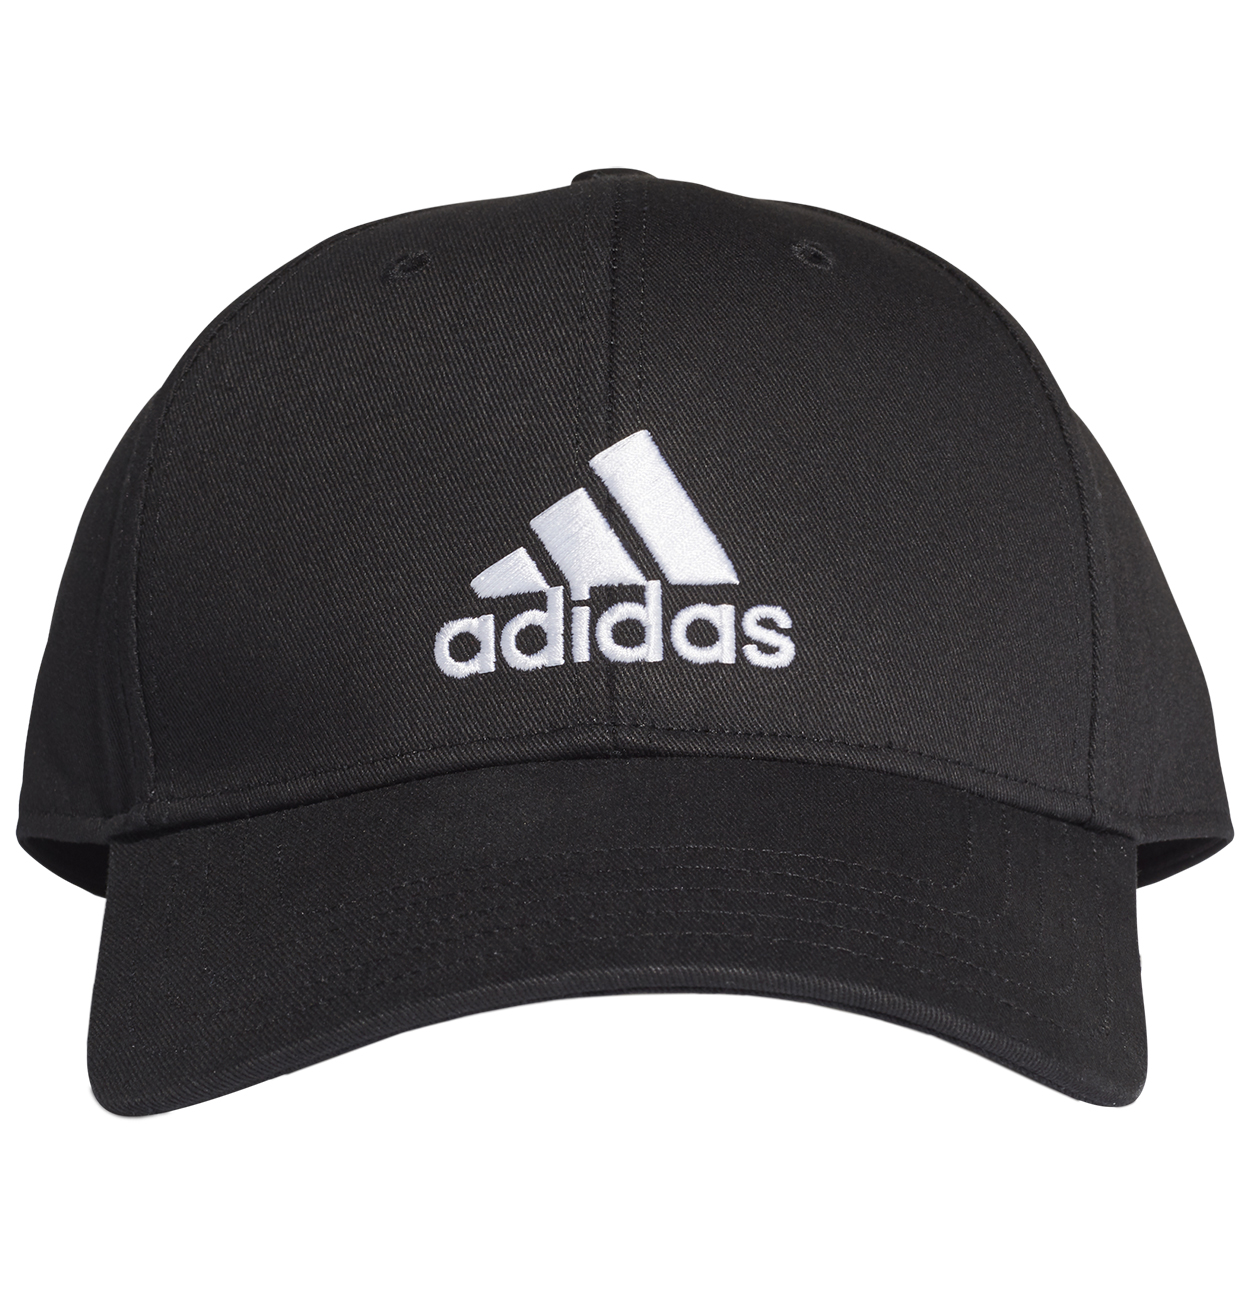 Casquette Adidas en coton noir avec logo et nom de la marque brodé en blanc à l'avant